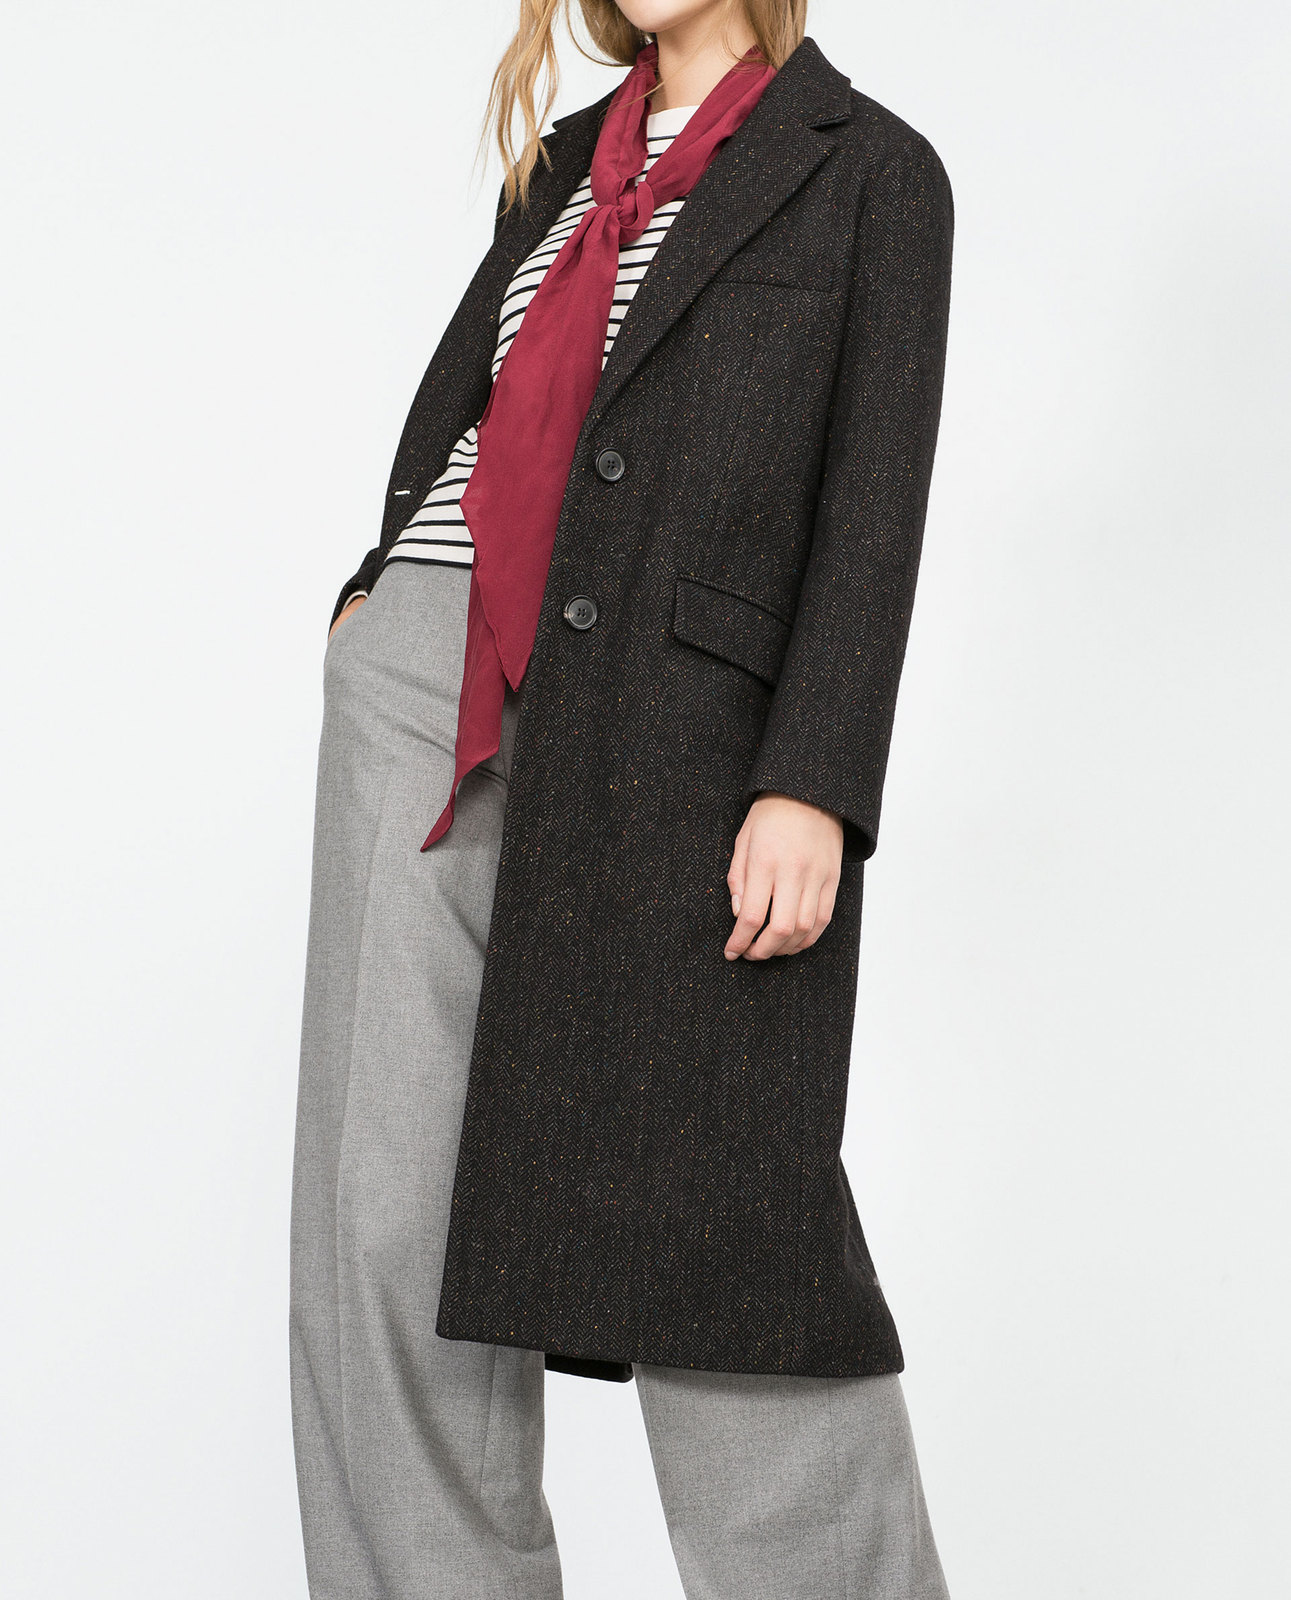 Zara egyenes szabású női kabát 2015.10.15 #88518 fotója